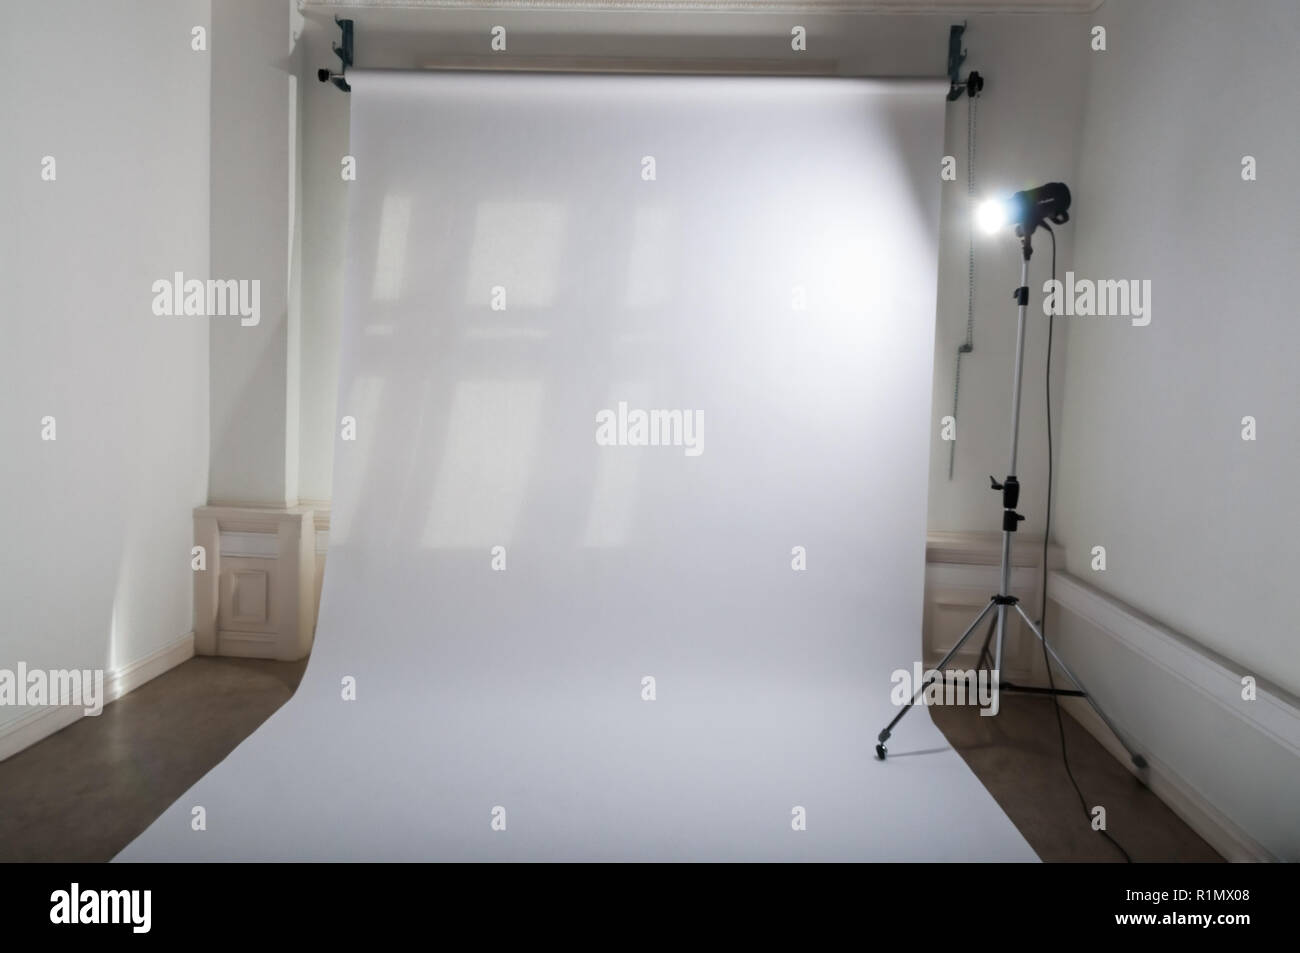 Un studio photo professionnel vide avec propre et simple de configuration de l'équipement photographique, papier ordinaire blanc en toile de fond et un flash lumineux d'une lampe de projecteur sur trépied dans un atelier en grisé Banque D'Images